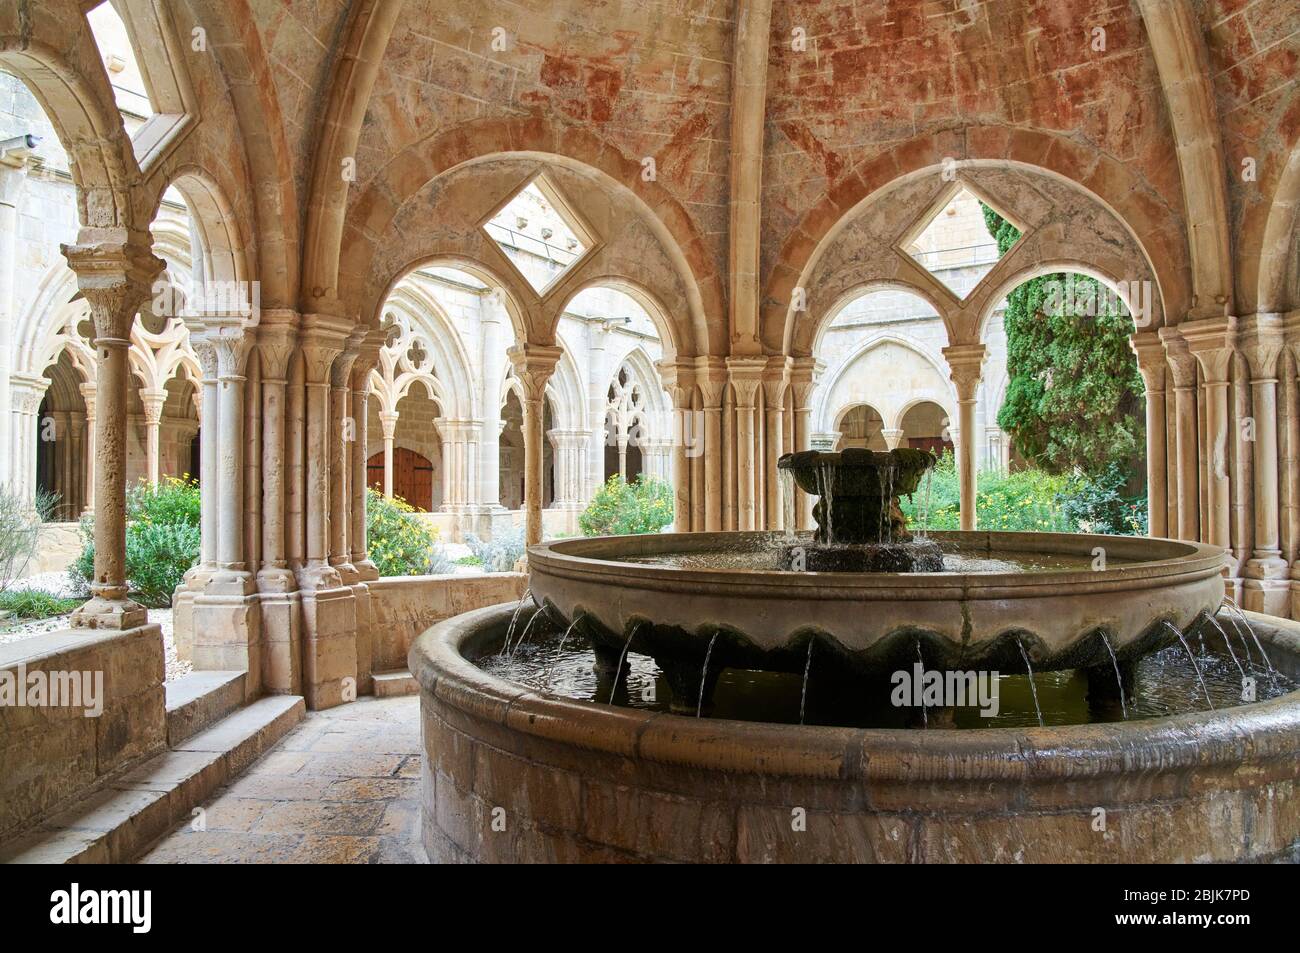 Washbasin Temple, Cloister, Monastery of Santa Maria de Poblet, Tarragona province, Catalonia, Spain, Europe Stock Photo